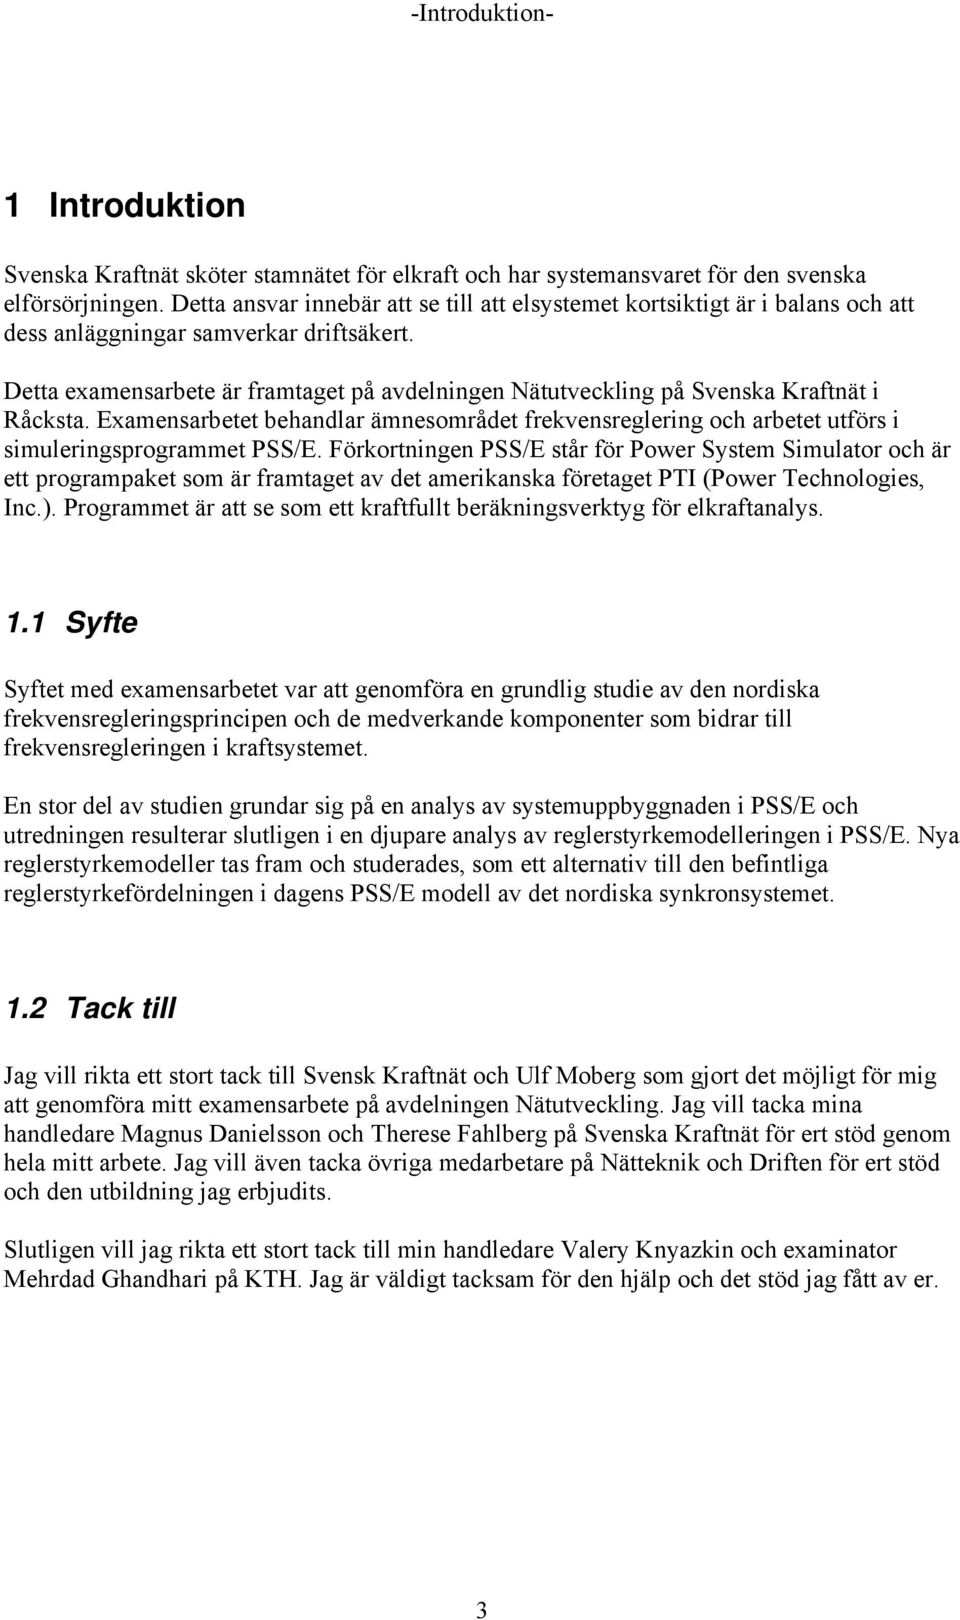 Detta examensarbete är framtaget på avdelningen Nätutveckling på Svenska Kraftnät i Råcksta. Examensarbetet behandlar ämnesområdet frekvensreglering och arbetet utförs i simuleringsprogrammet PSS/E.